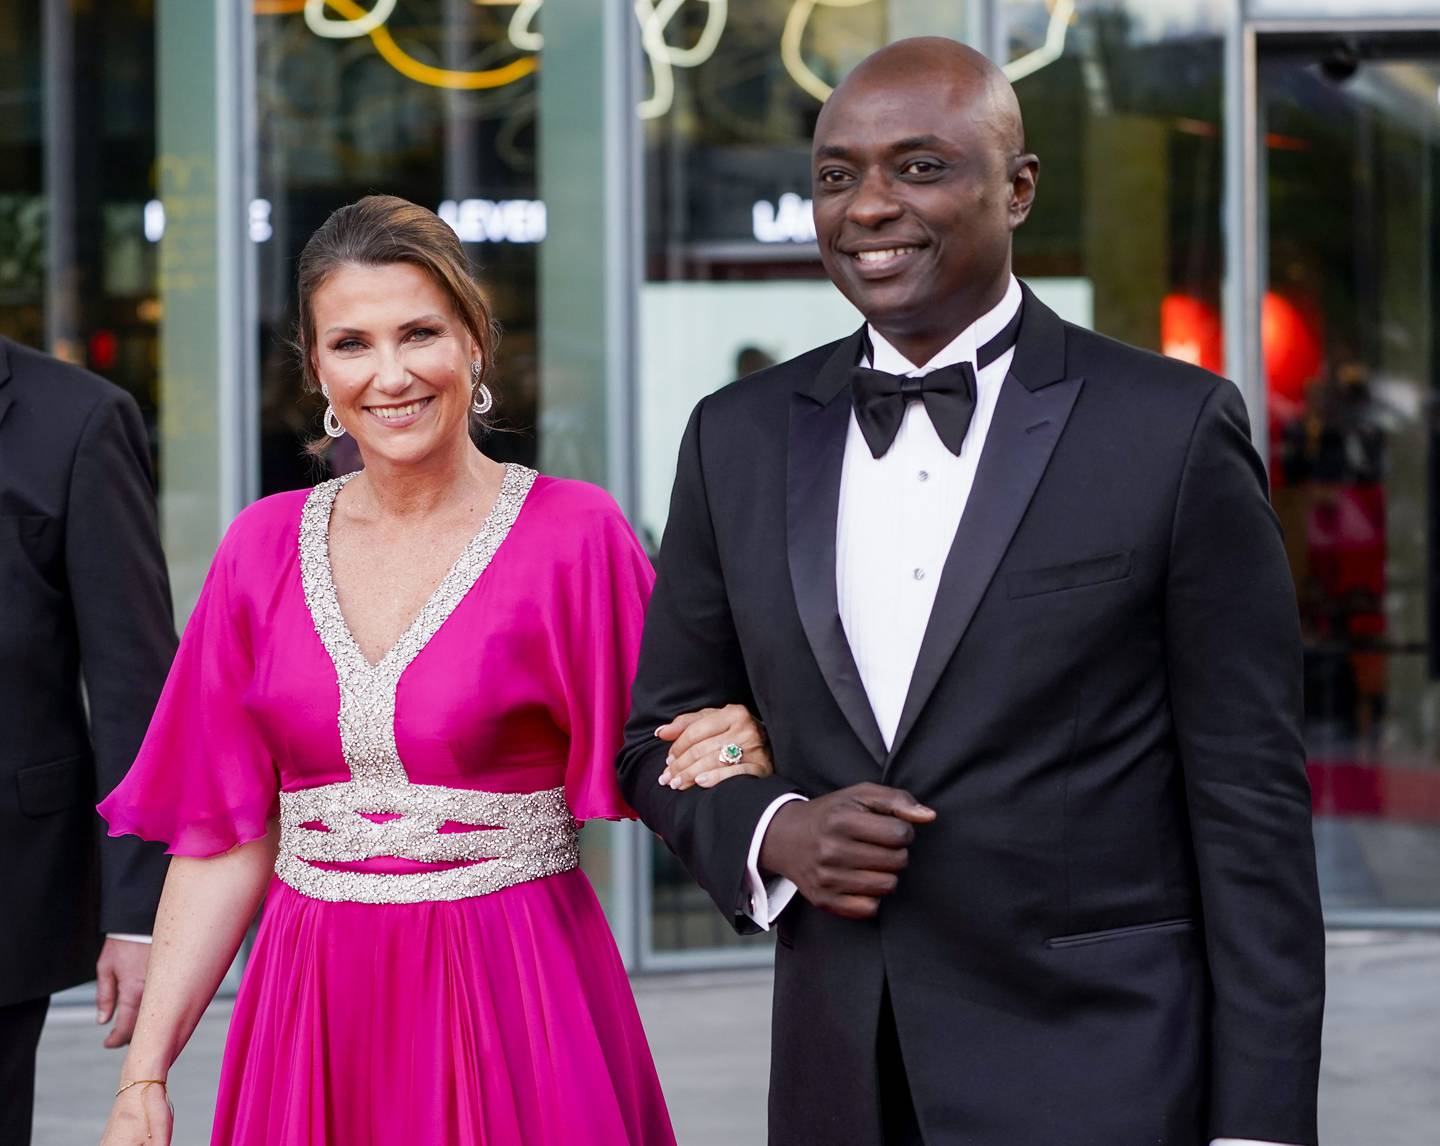 Prinsesse Märtha Louise og Durek Verrett er i gang med bryllaupsplanlegginga.
Foto: Lise Åserud / NTB /NPK